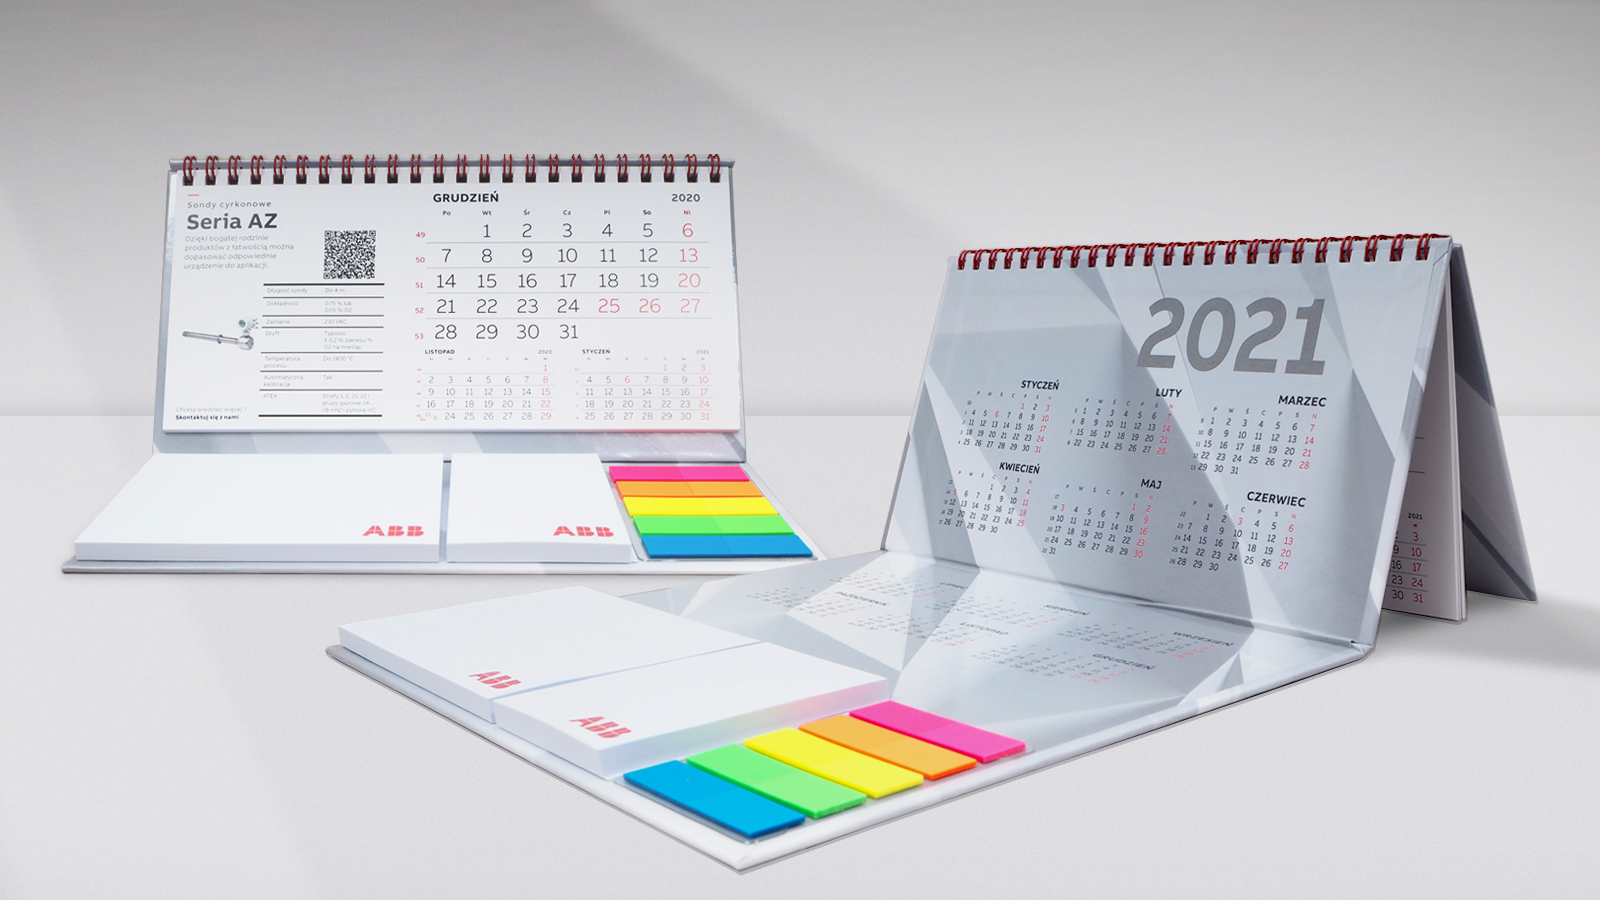 ABB na 2021 rok – planer 980x680 mm + kalendarz czterodzielny z płaską główką + kalendarz biurkowy stojący (piramidka) z notesem i znacznikami + biuwar